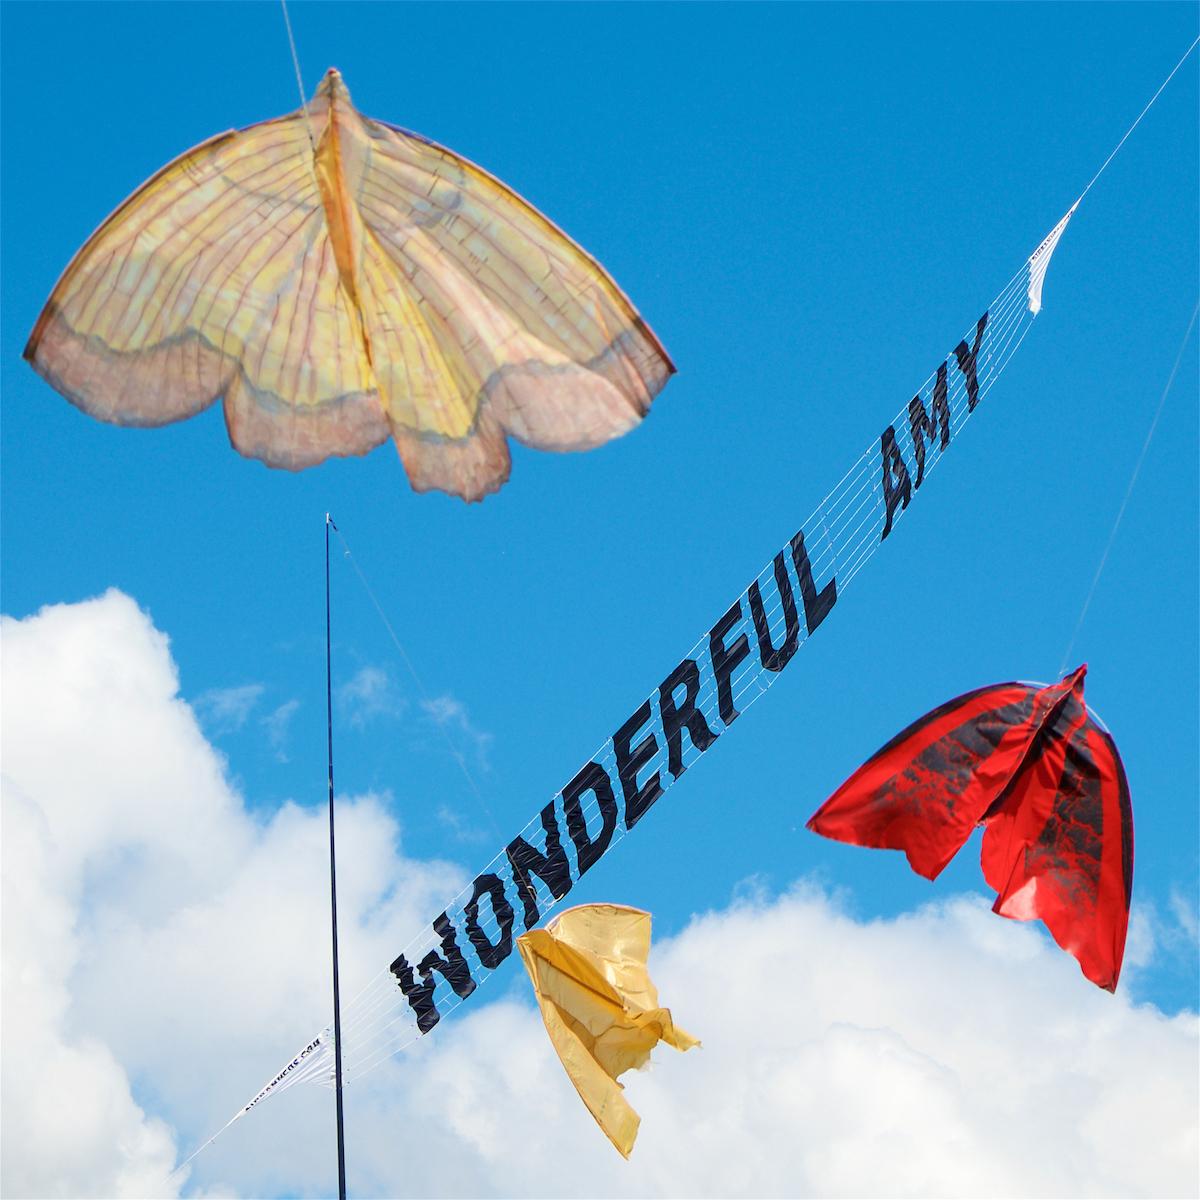 Amy kite festival